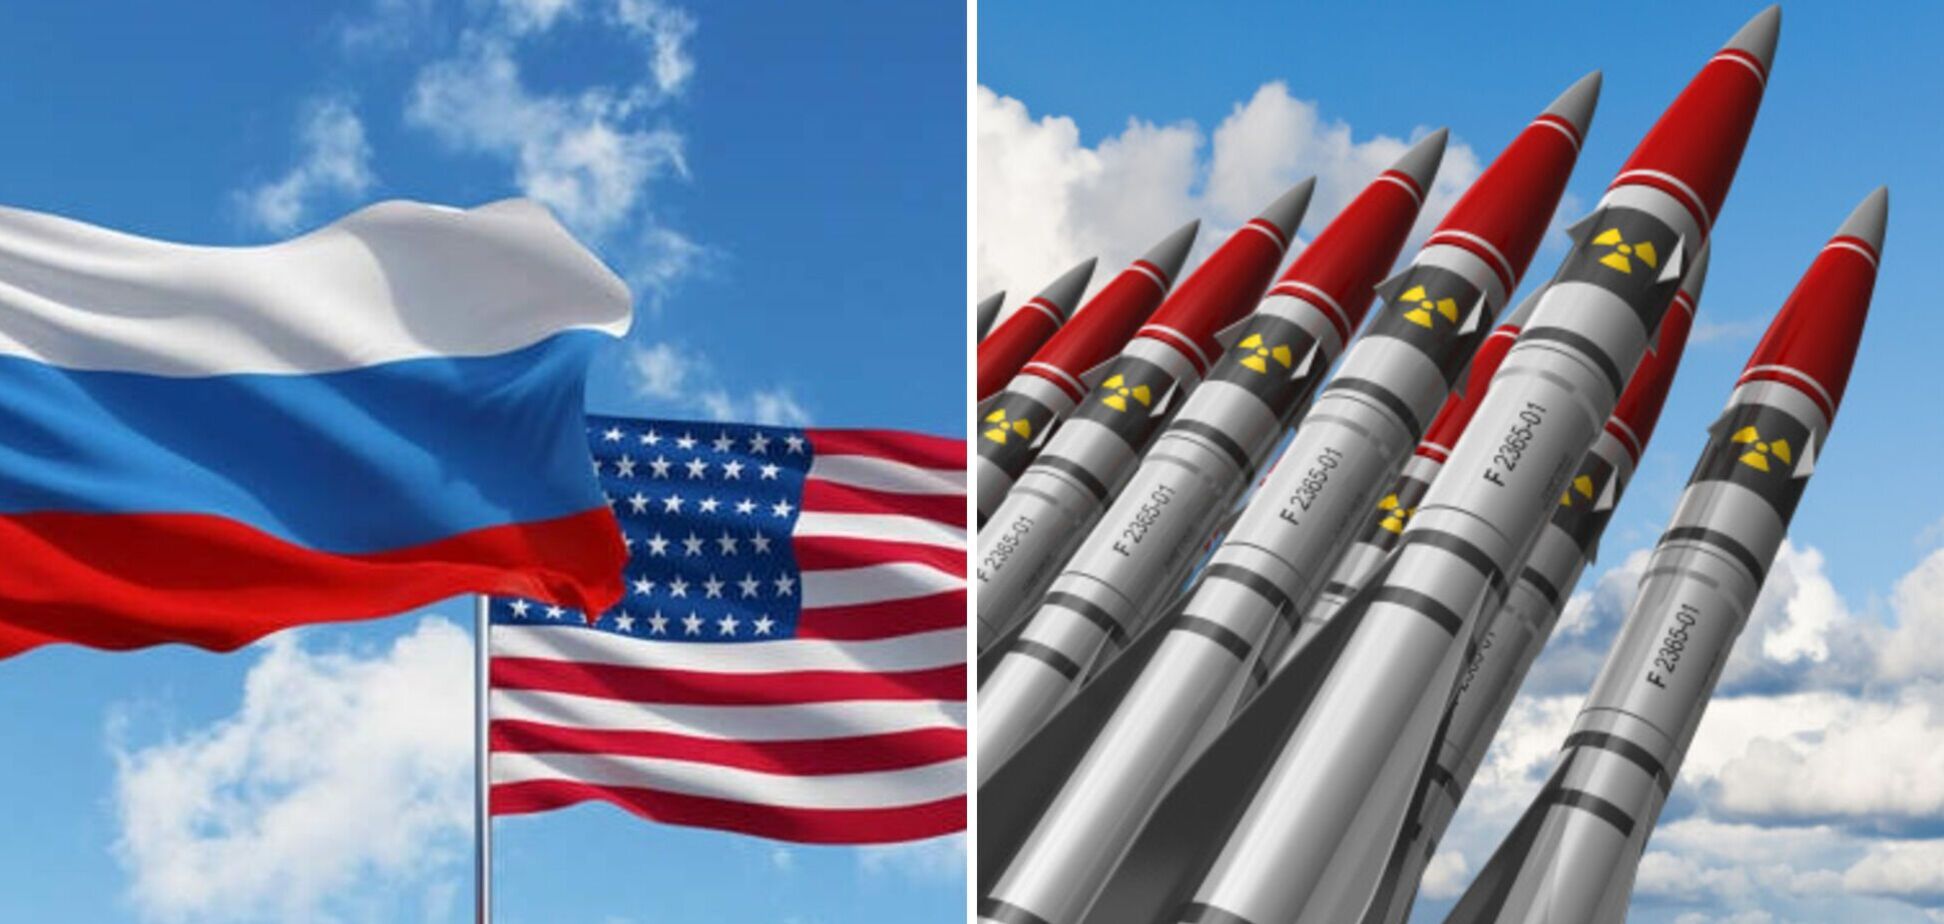 США готовы оперативно начать обсуждение с РФ новой системы контроля над ядерным вооружением – Белый дом